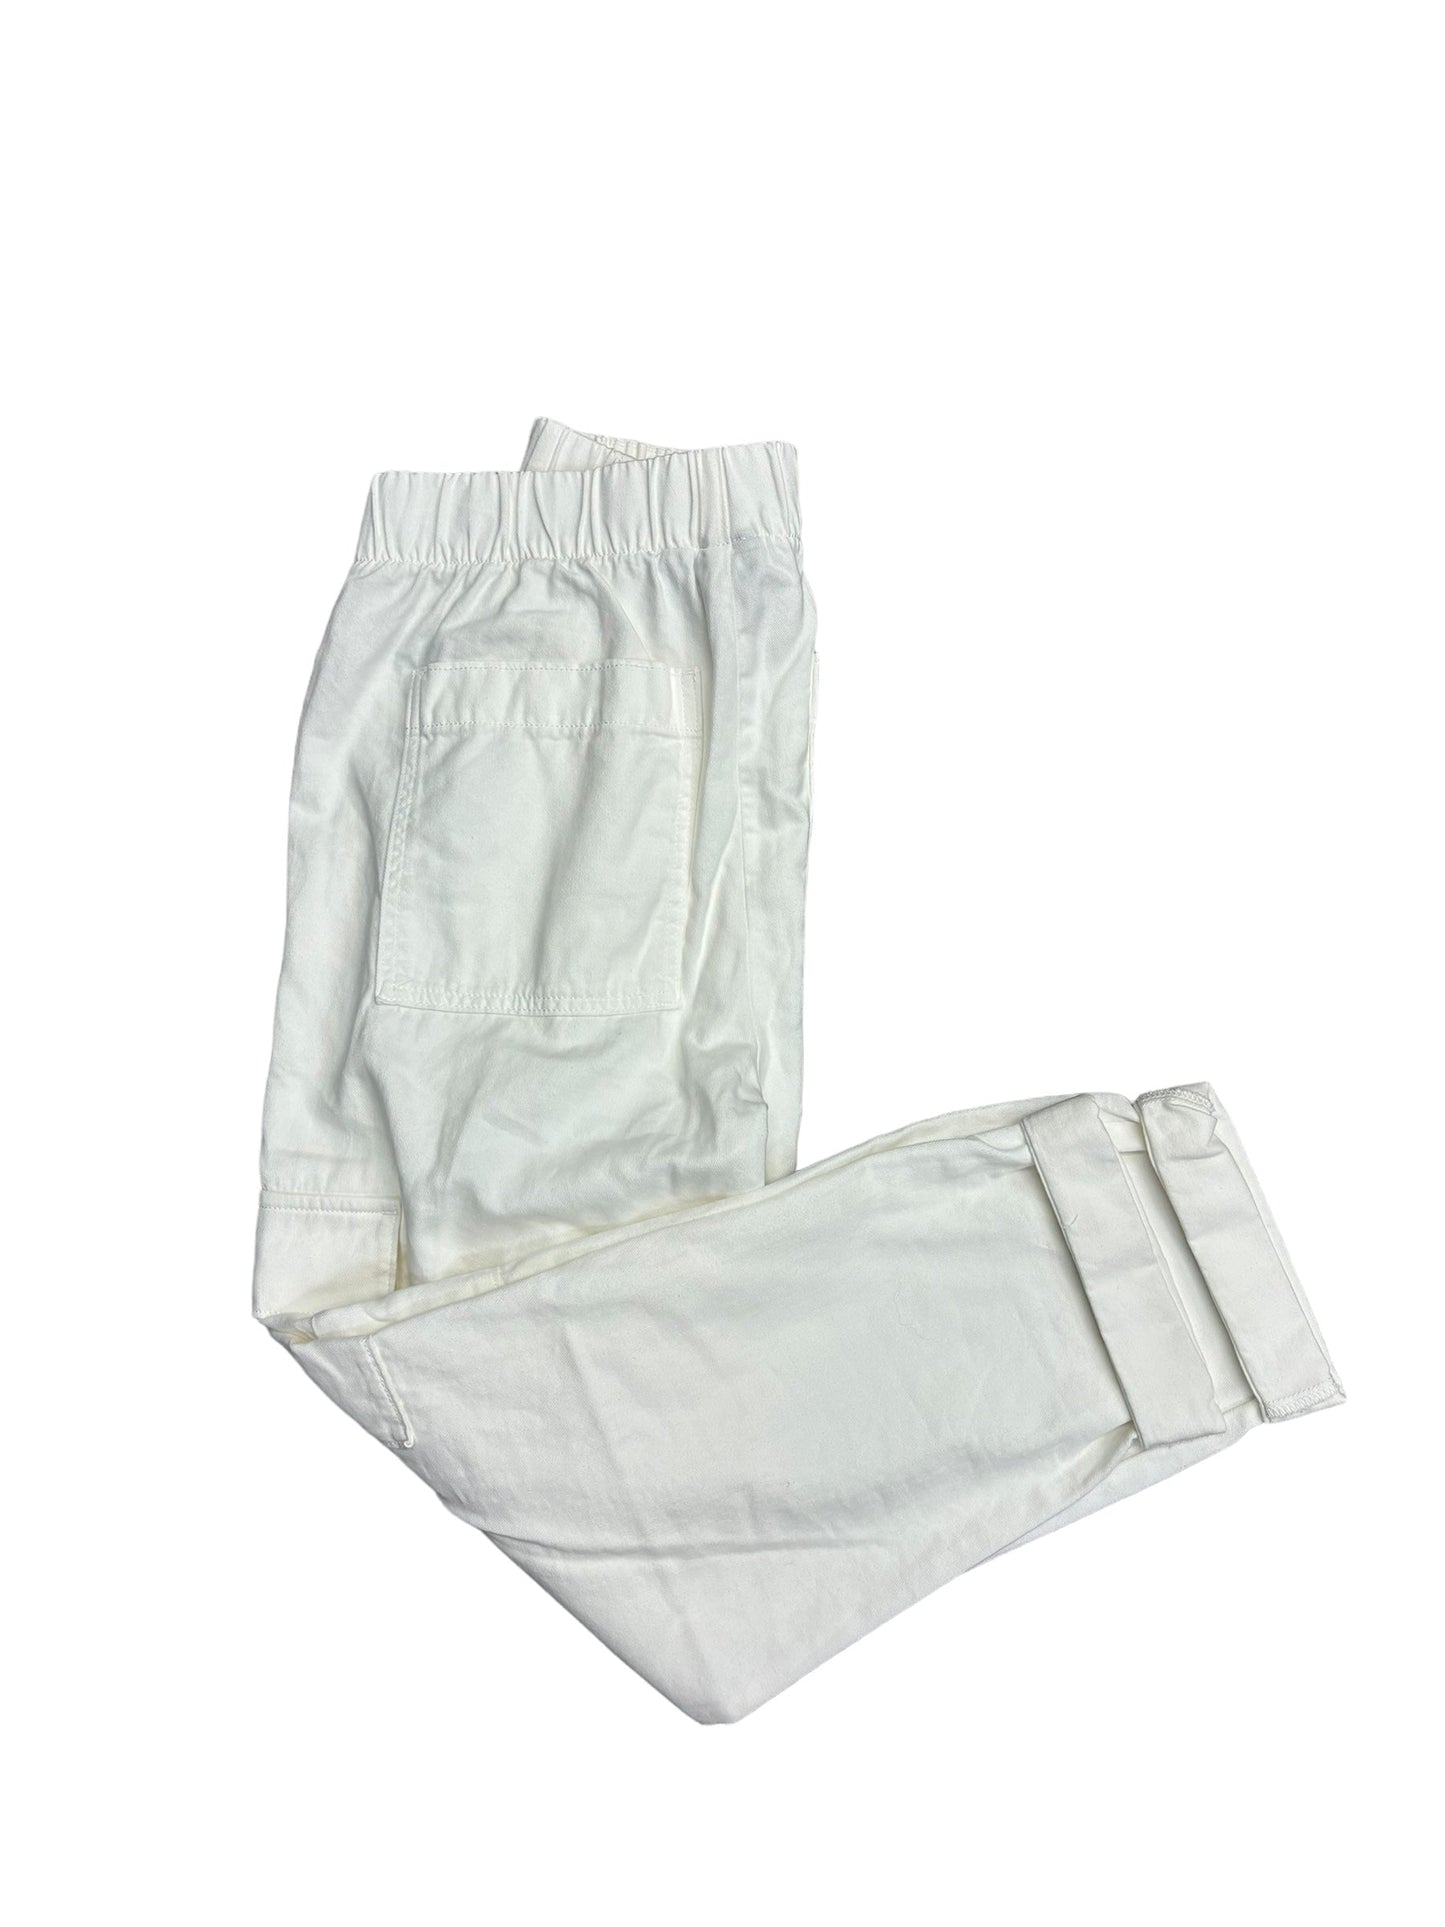 White Pants Linen Gap, Size 6